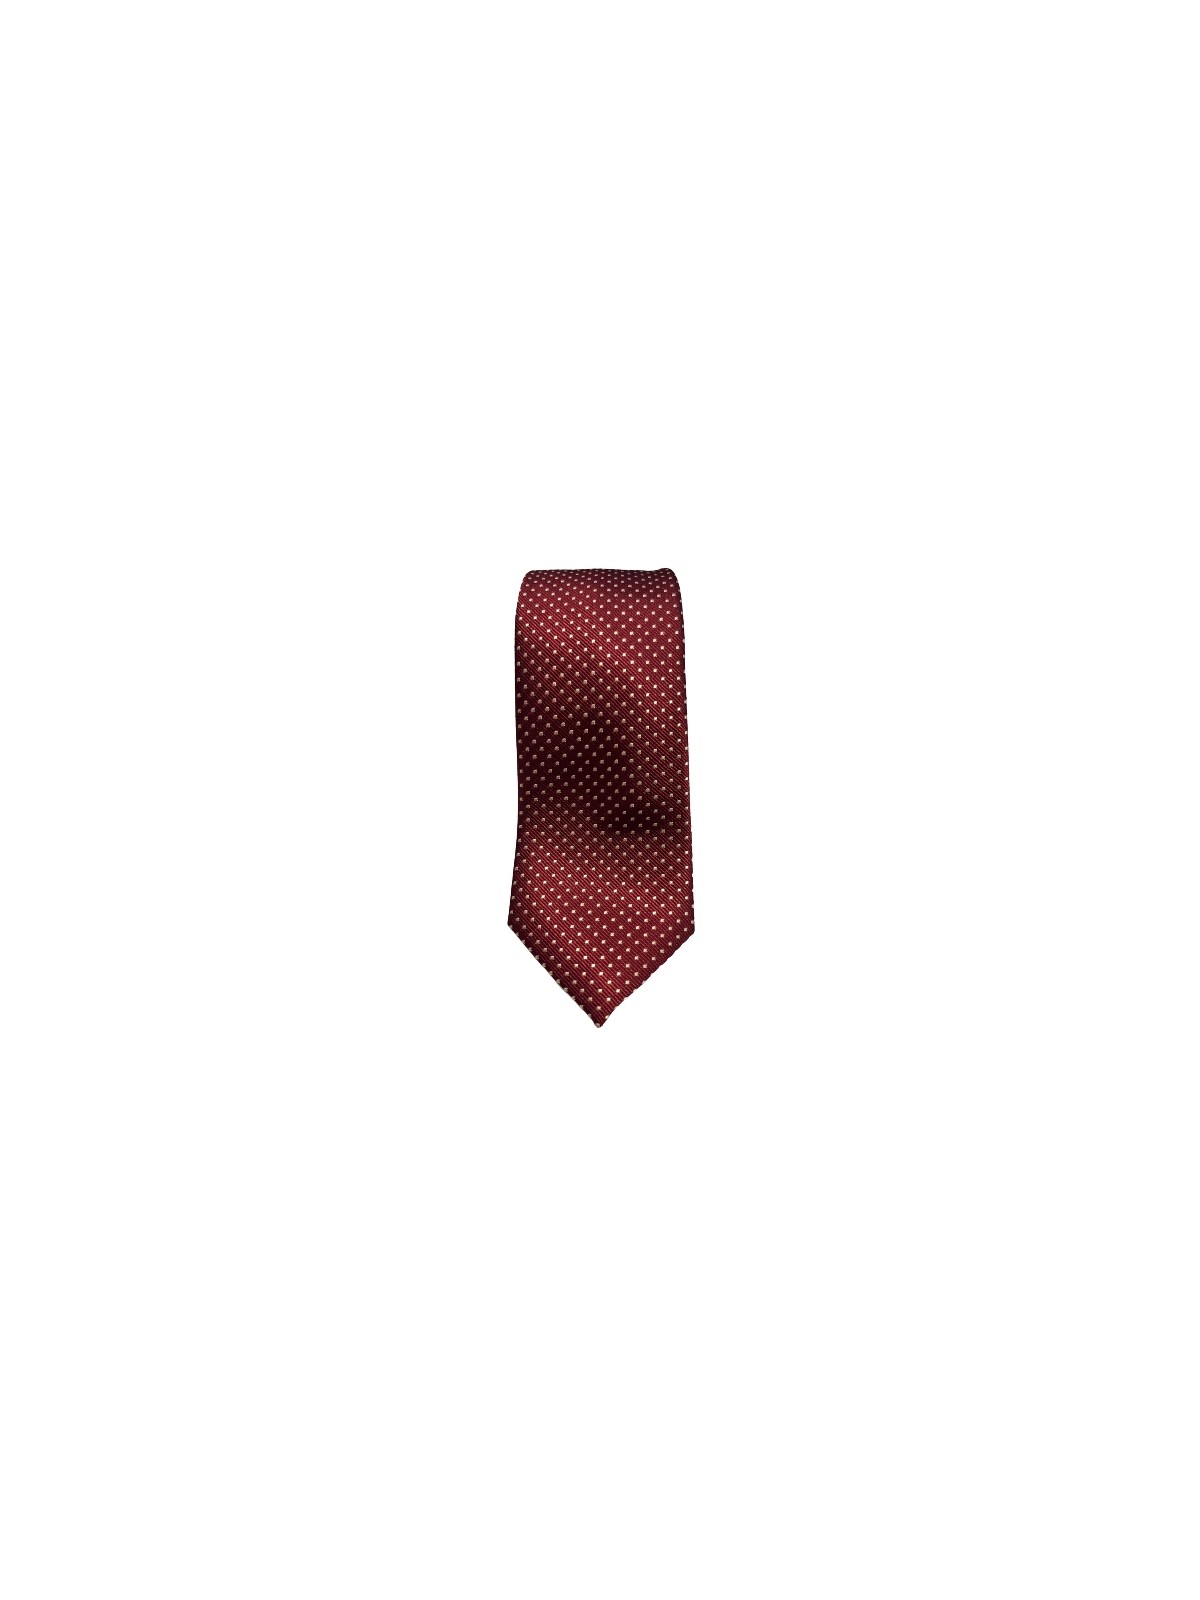 Cravate rouge à points blanc